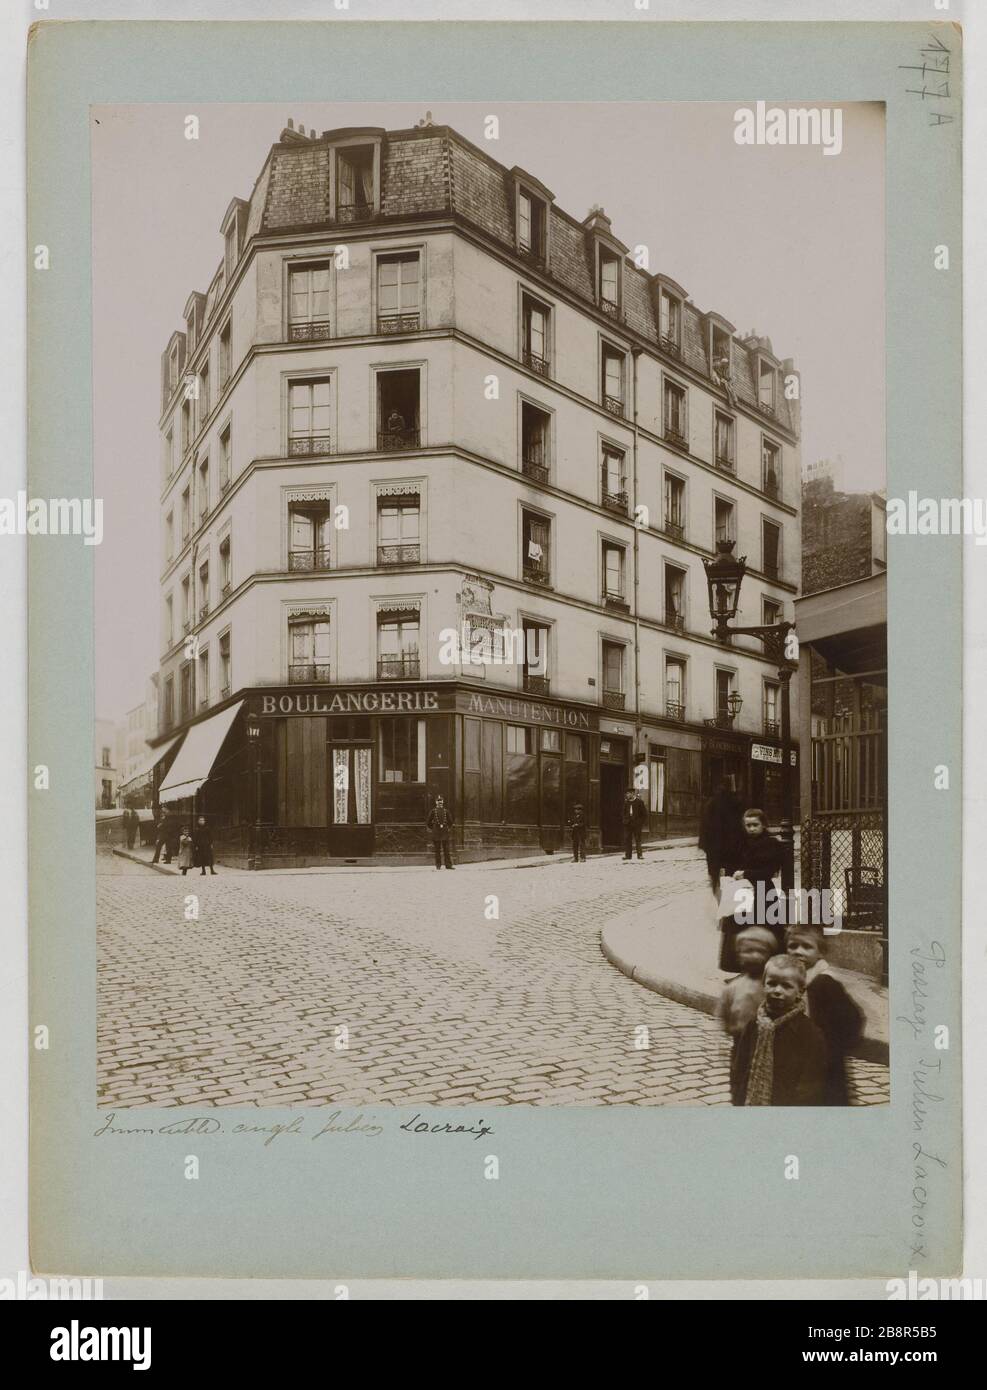 Building on the corner of rue Julien-Lacroix. Paris (twentieth arr.) Immeuble, à l'angle de la rue Julien-Lacroix. Paris (XXème arr.), 1897-1910. Union Photographique Française. Paris, musée Carnavalet. Stock Photo